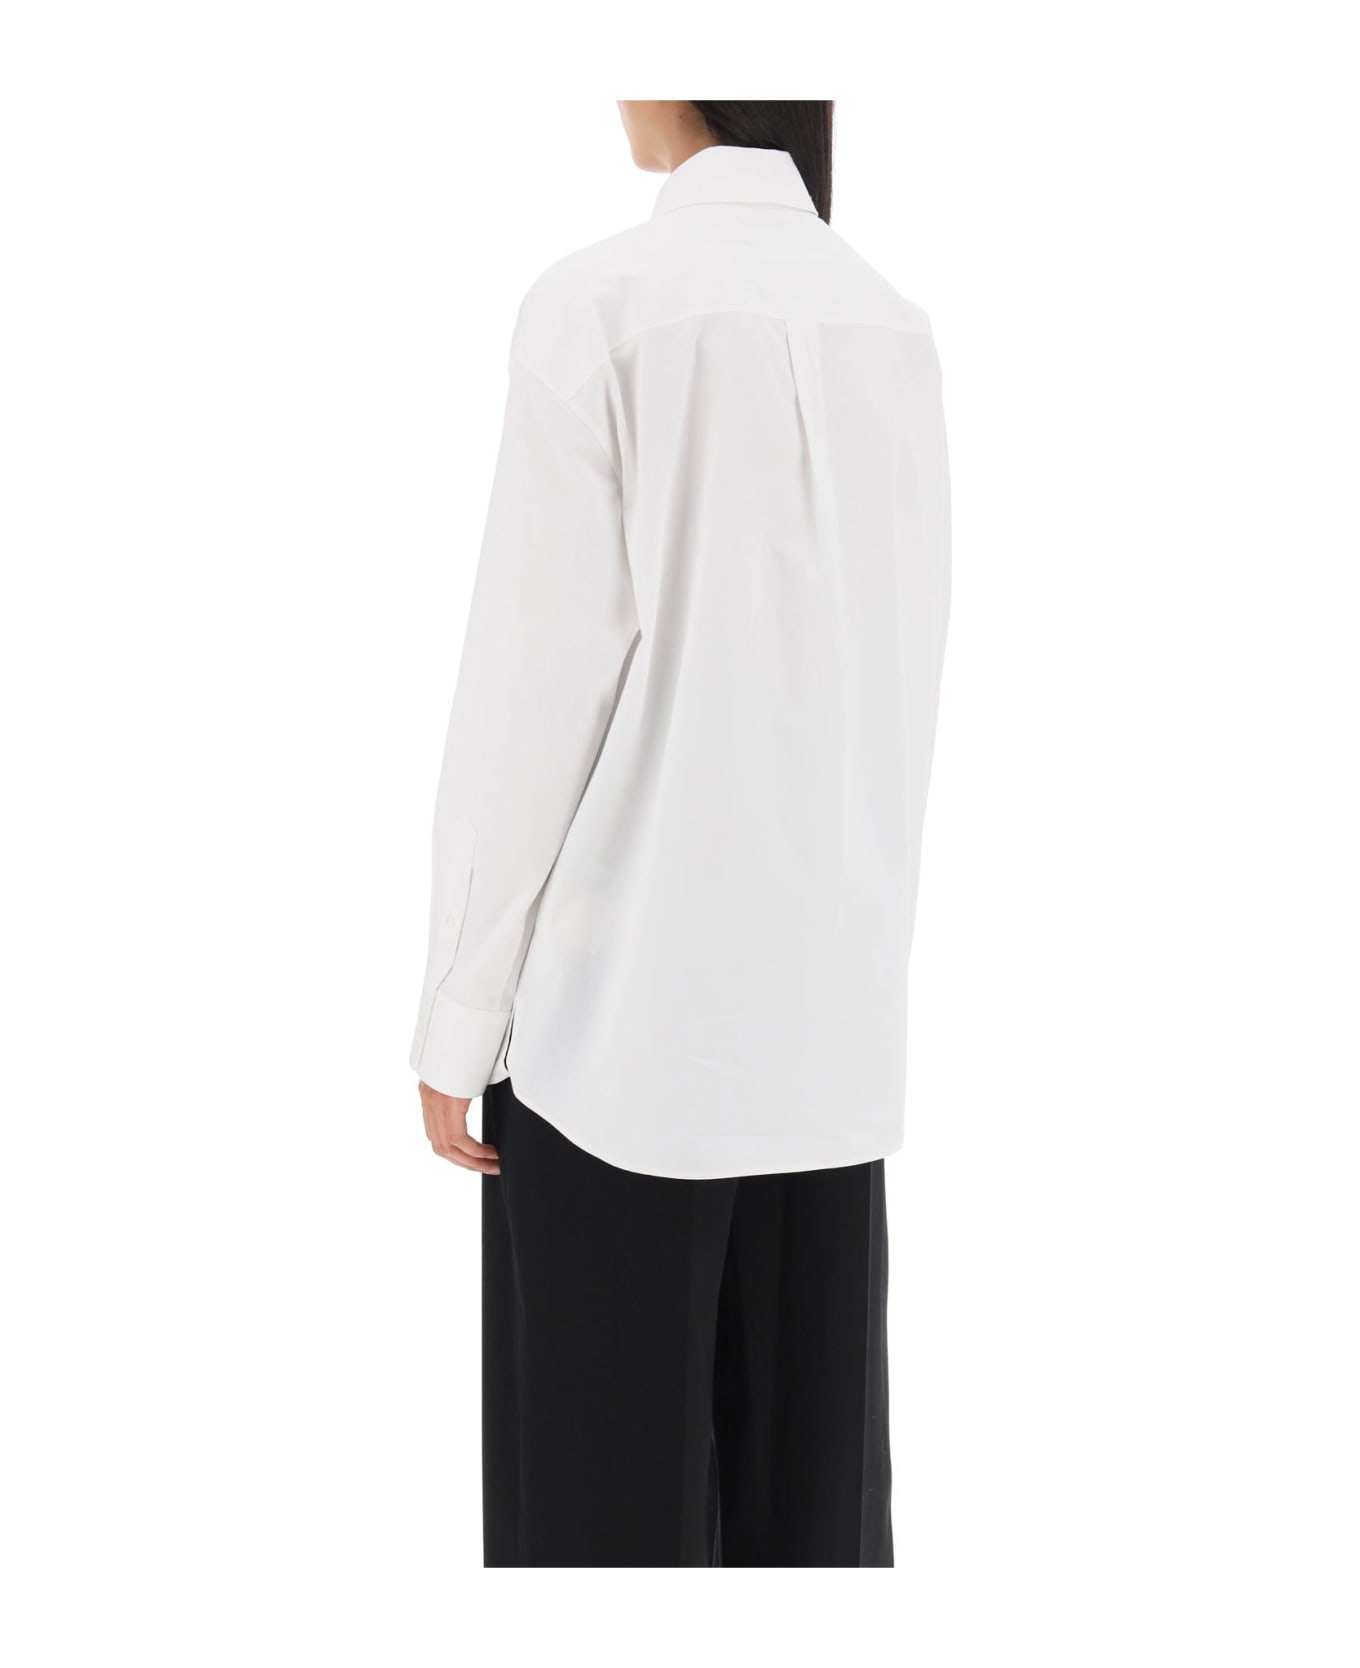 Alexander Wang Poplin Shirt With Rhinestones - WHITE (White)